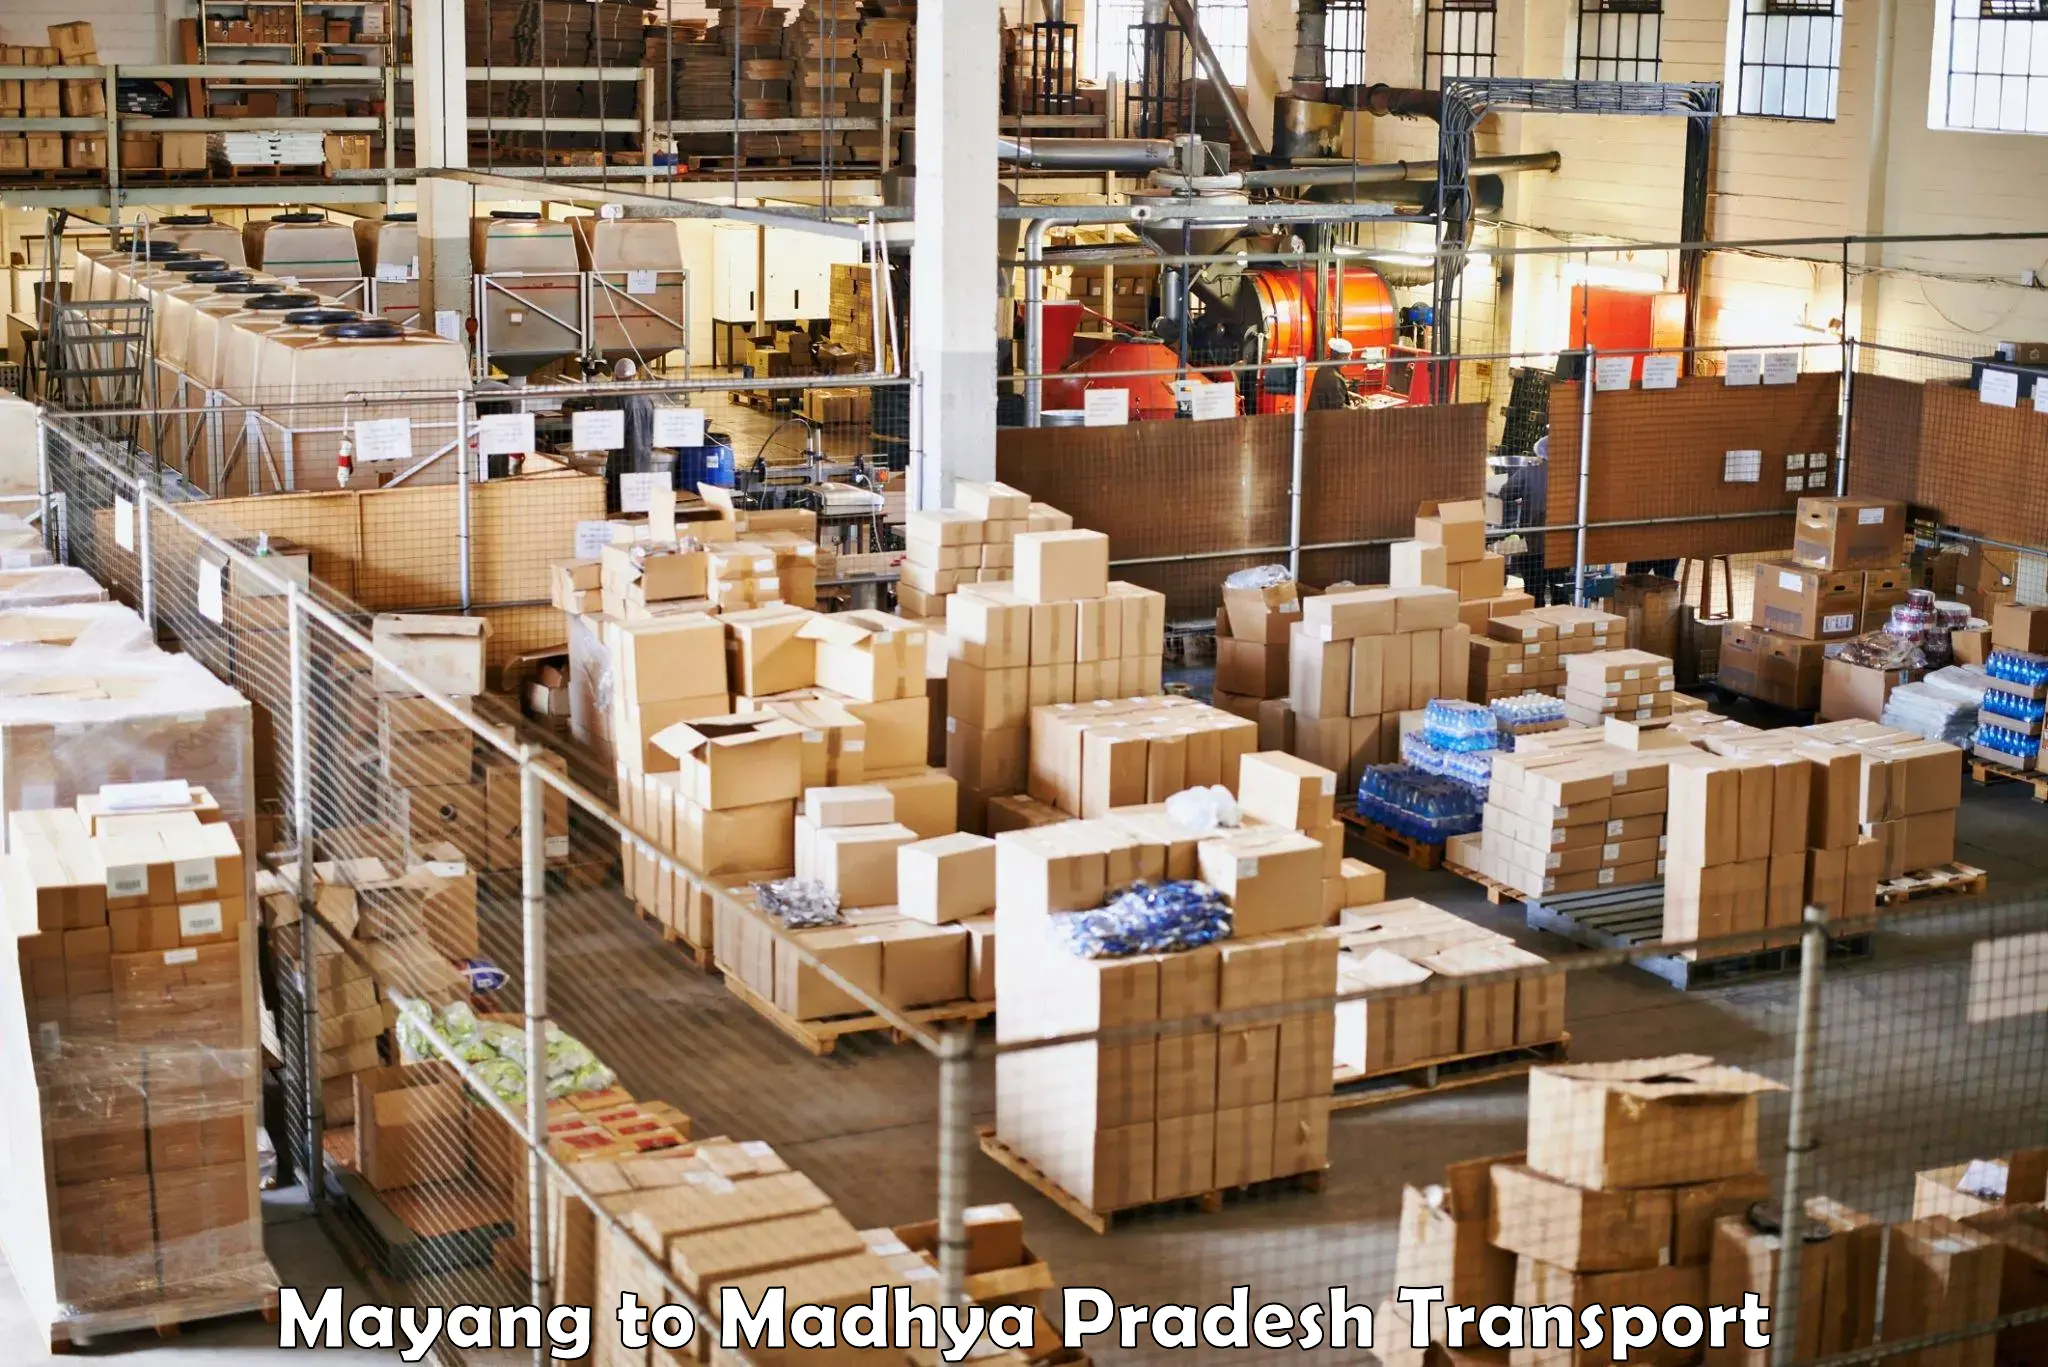 Shipping partner Mayang to Sausar